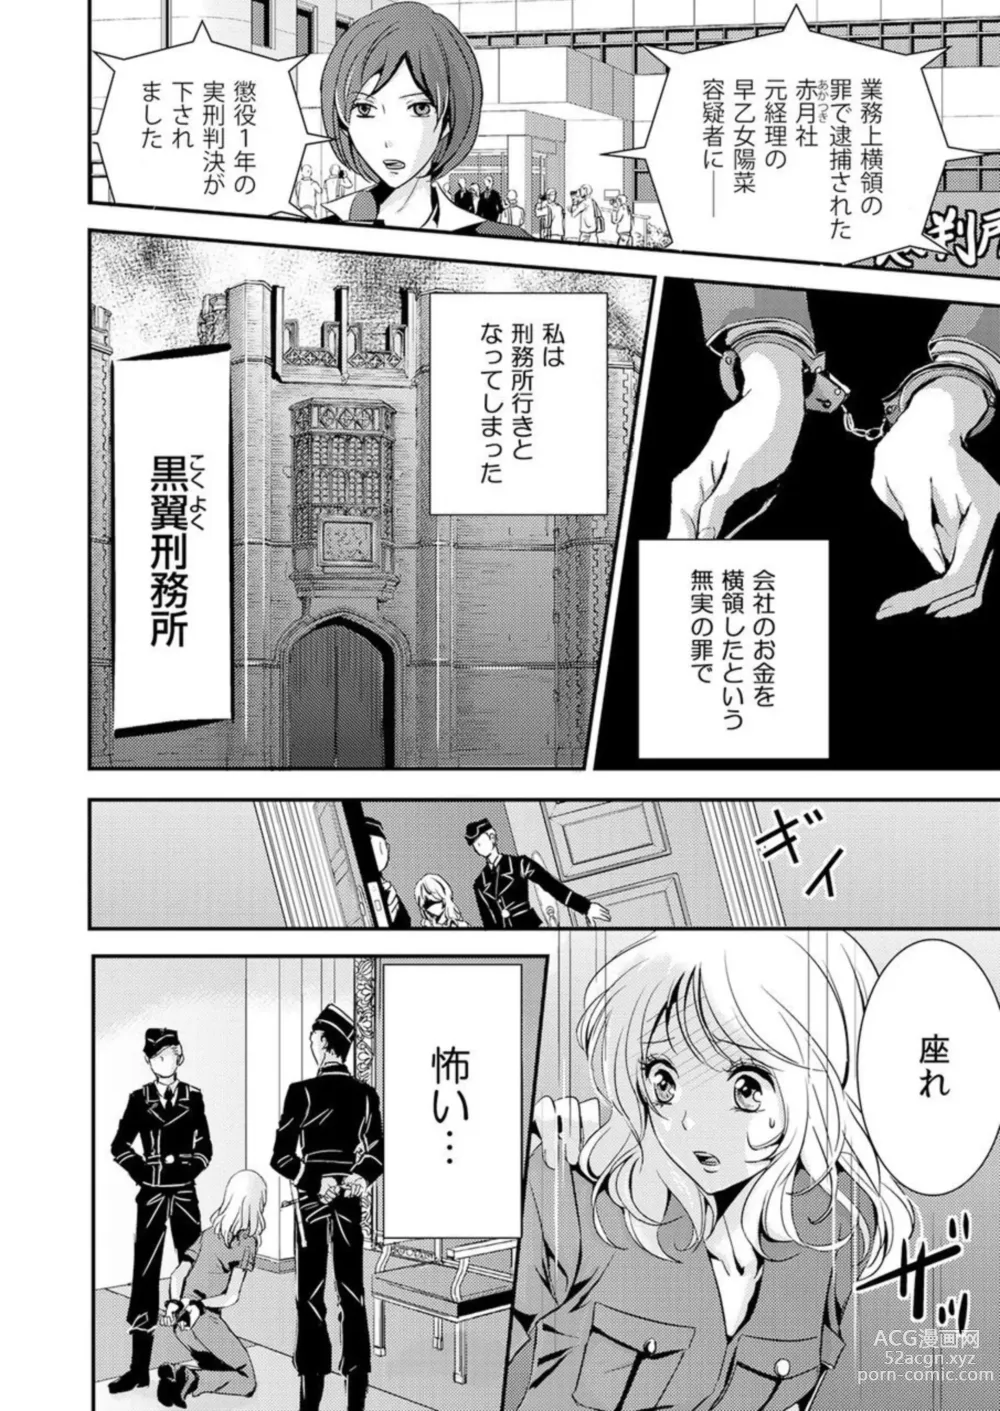 Page 4 of manga Kono Mama ja... Iku...